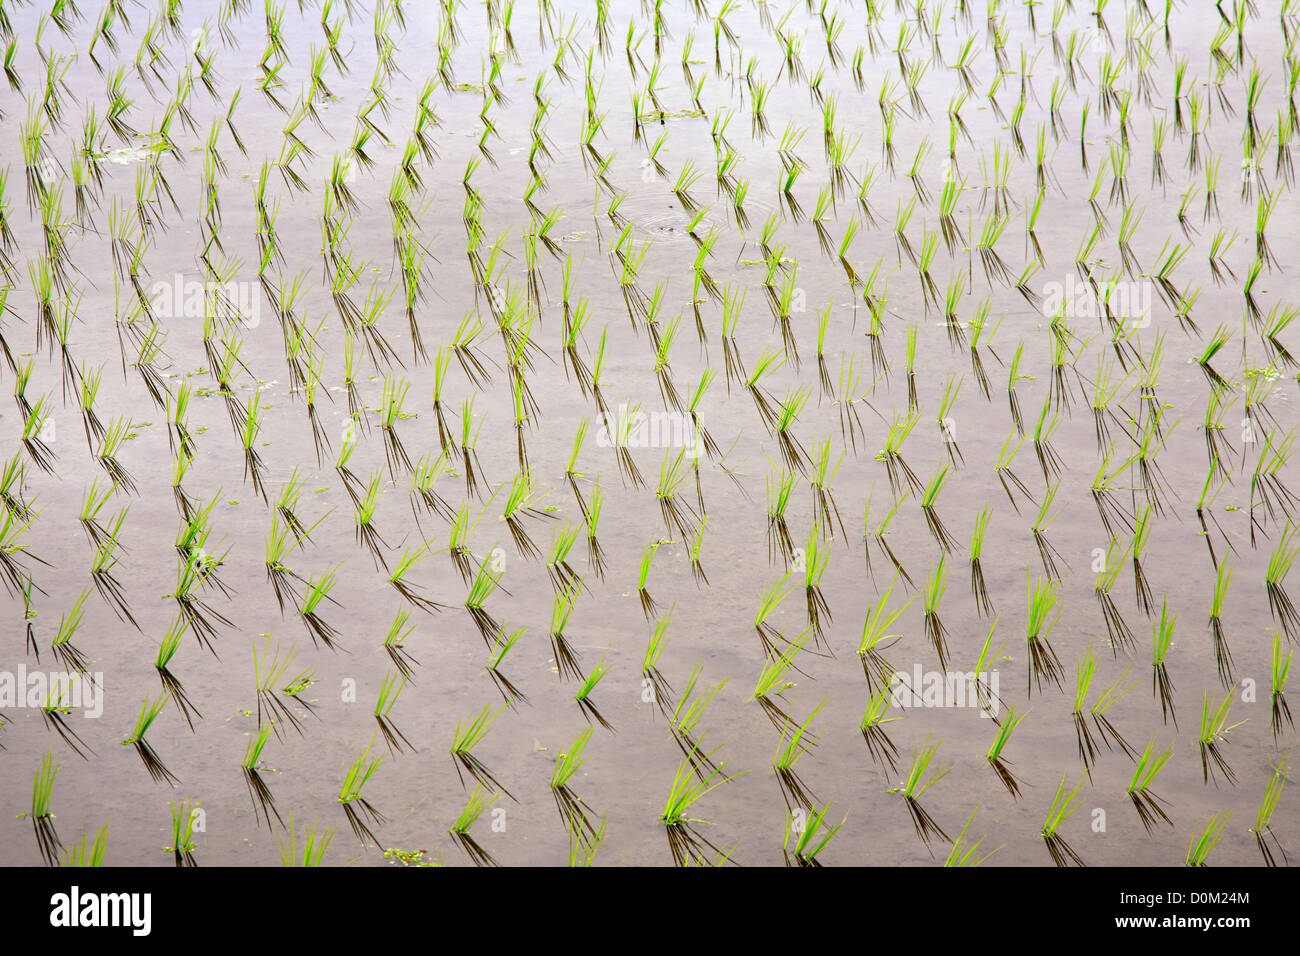 Las plántulas de arroz en agua en los campos de arroz, Bali, Indonesia Foto de stock